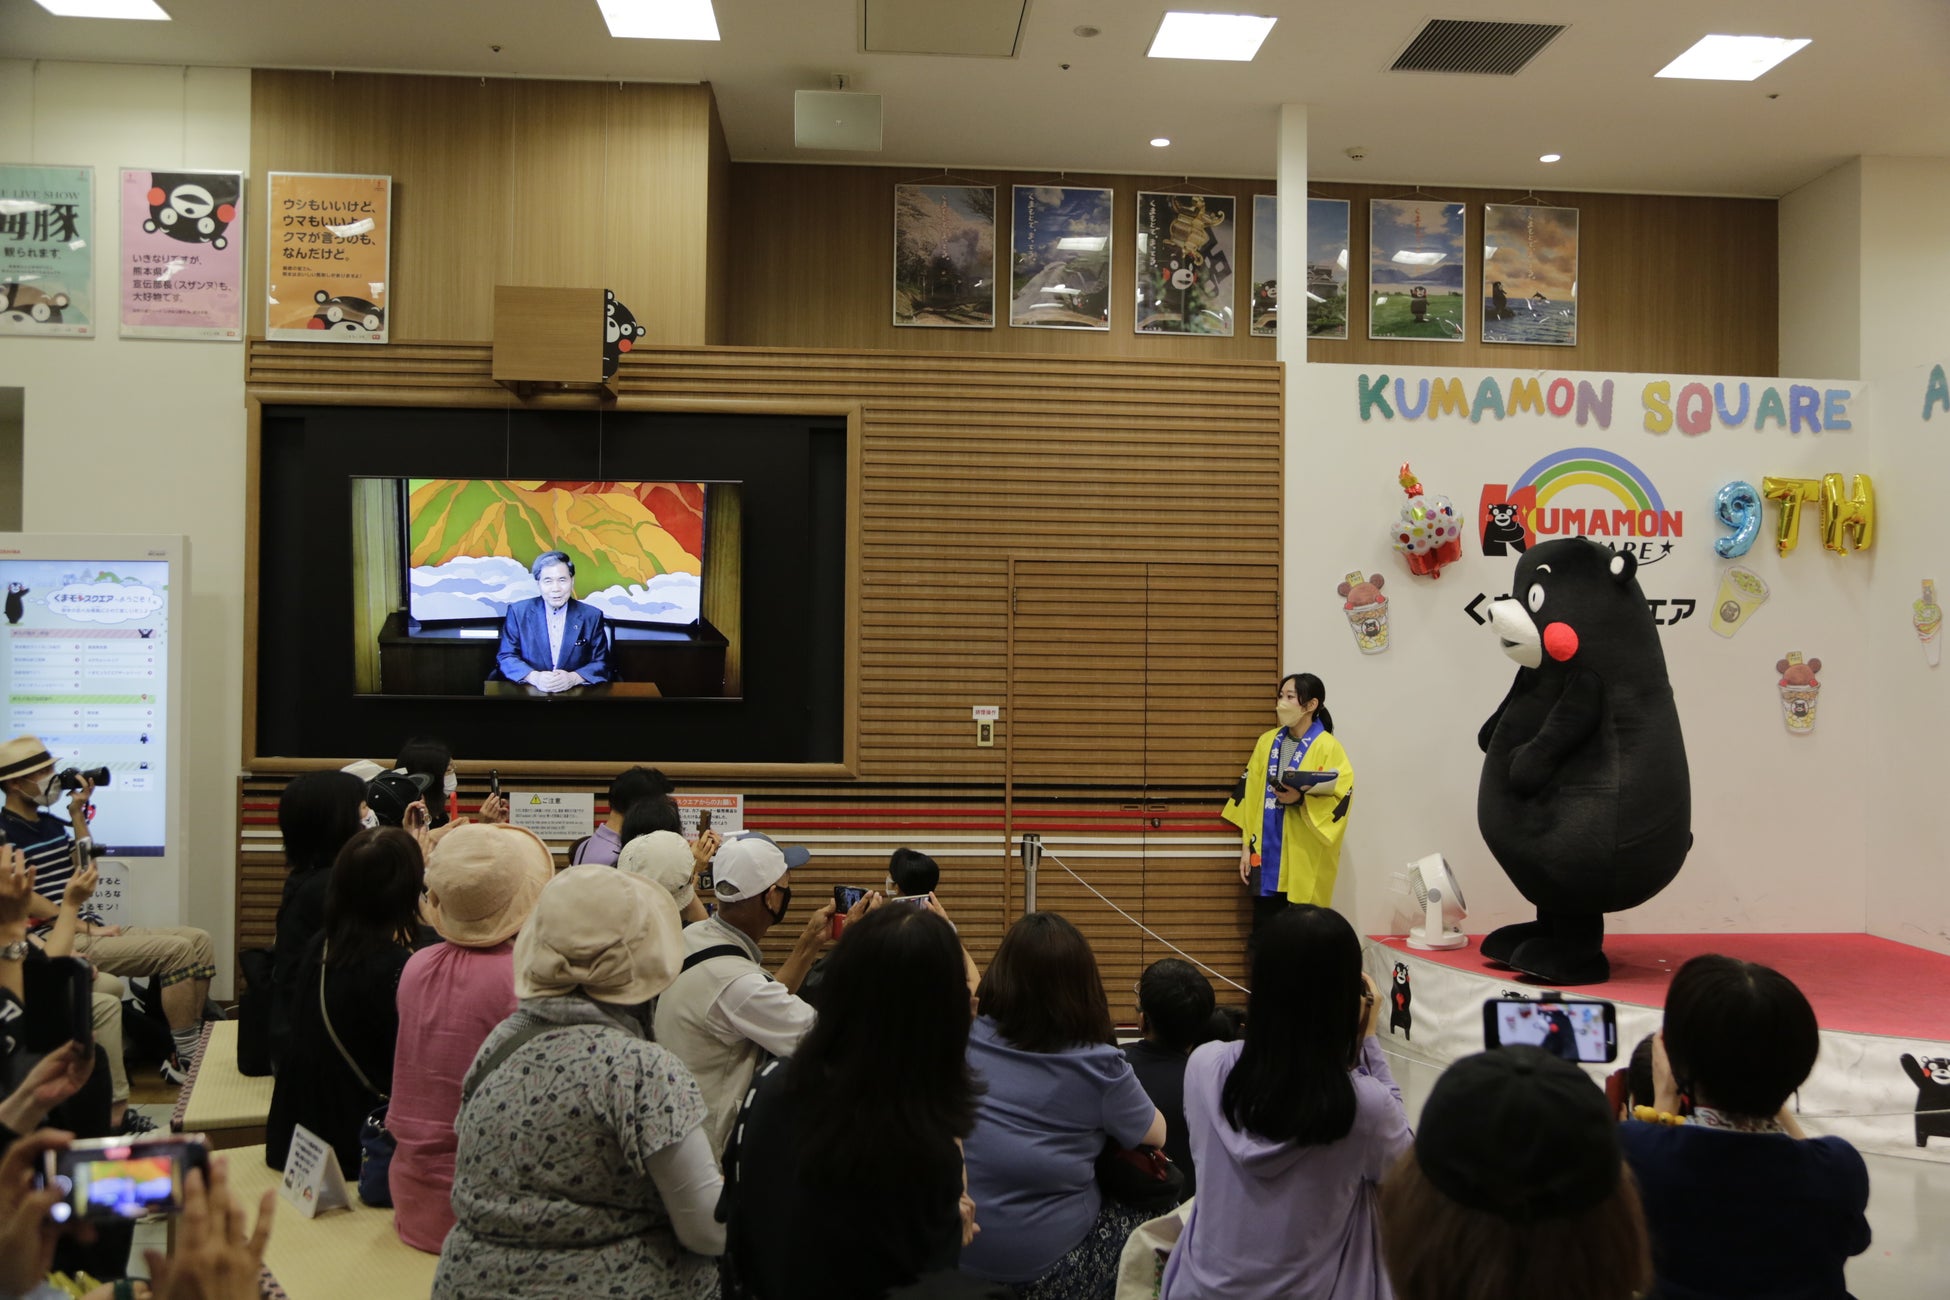 熊本県蒲島知事からのお祝いメッセージビデオも登場! くまモンの聖地「くまモンスクエア」にて、オープン 9 周年記念セレモニーを開催。 「これからも 10 周年に向けて、がまだすモン!」by くまモンのサブ画像3